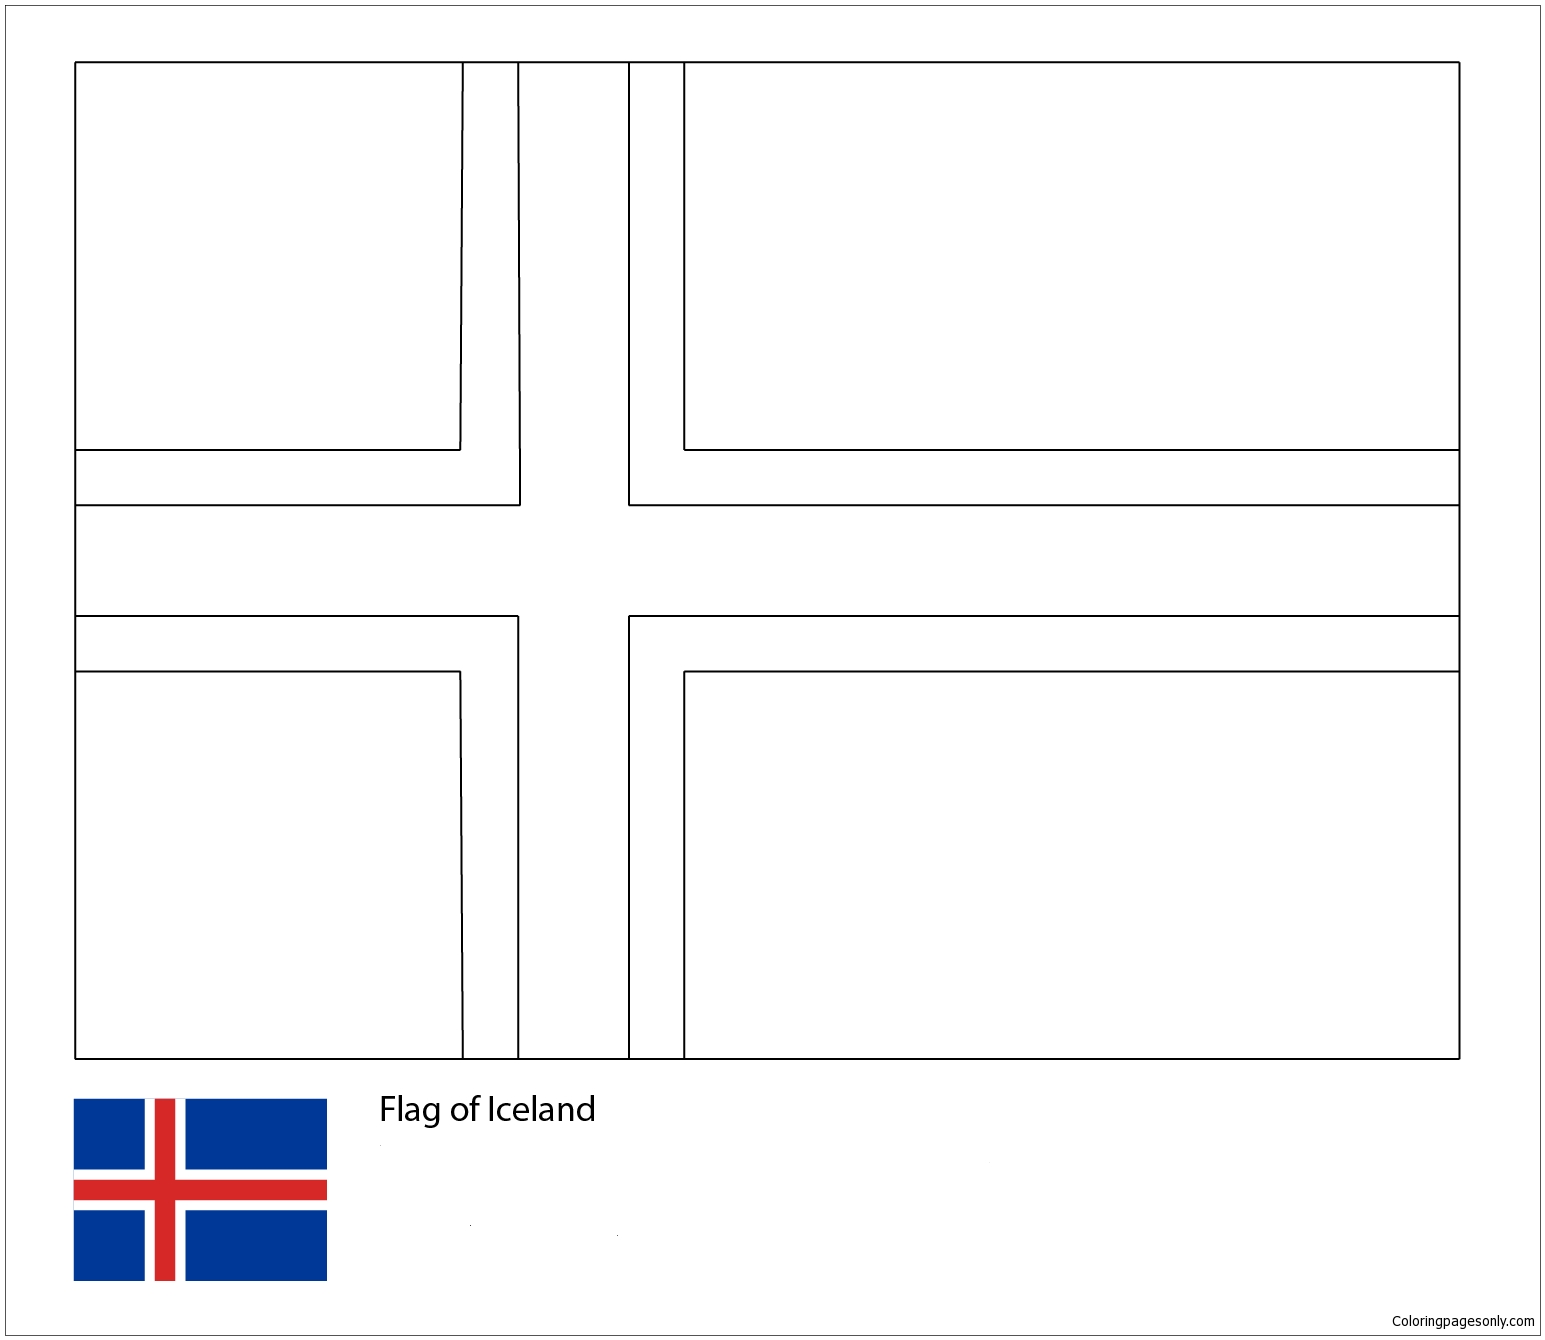 冰岛国旗-2018 年世界杯 2018 年世界杯旗帜